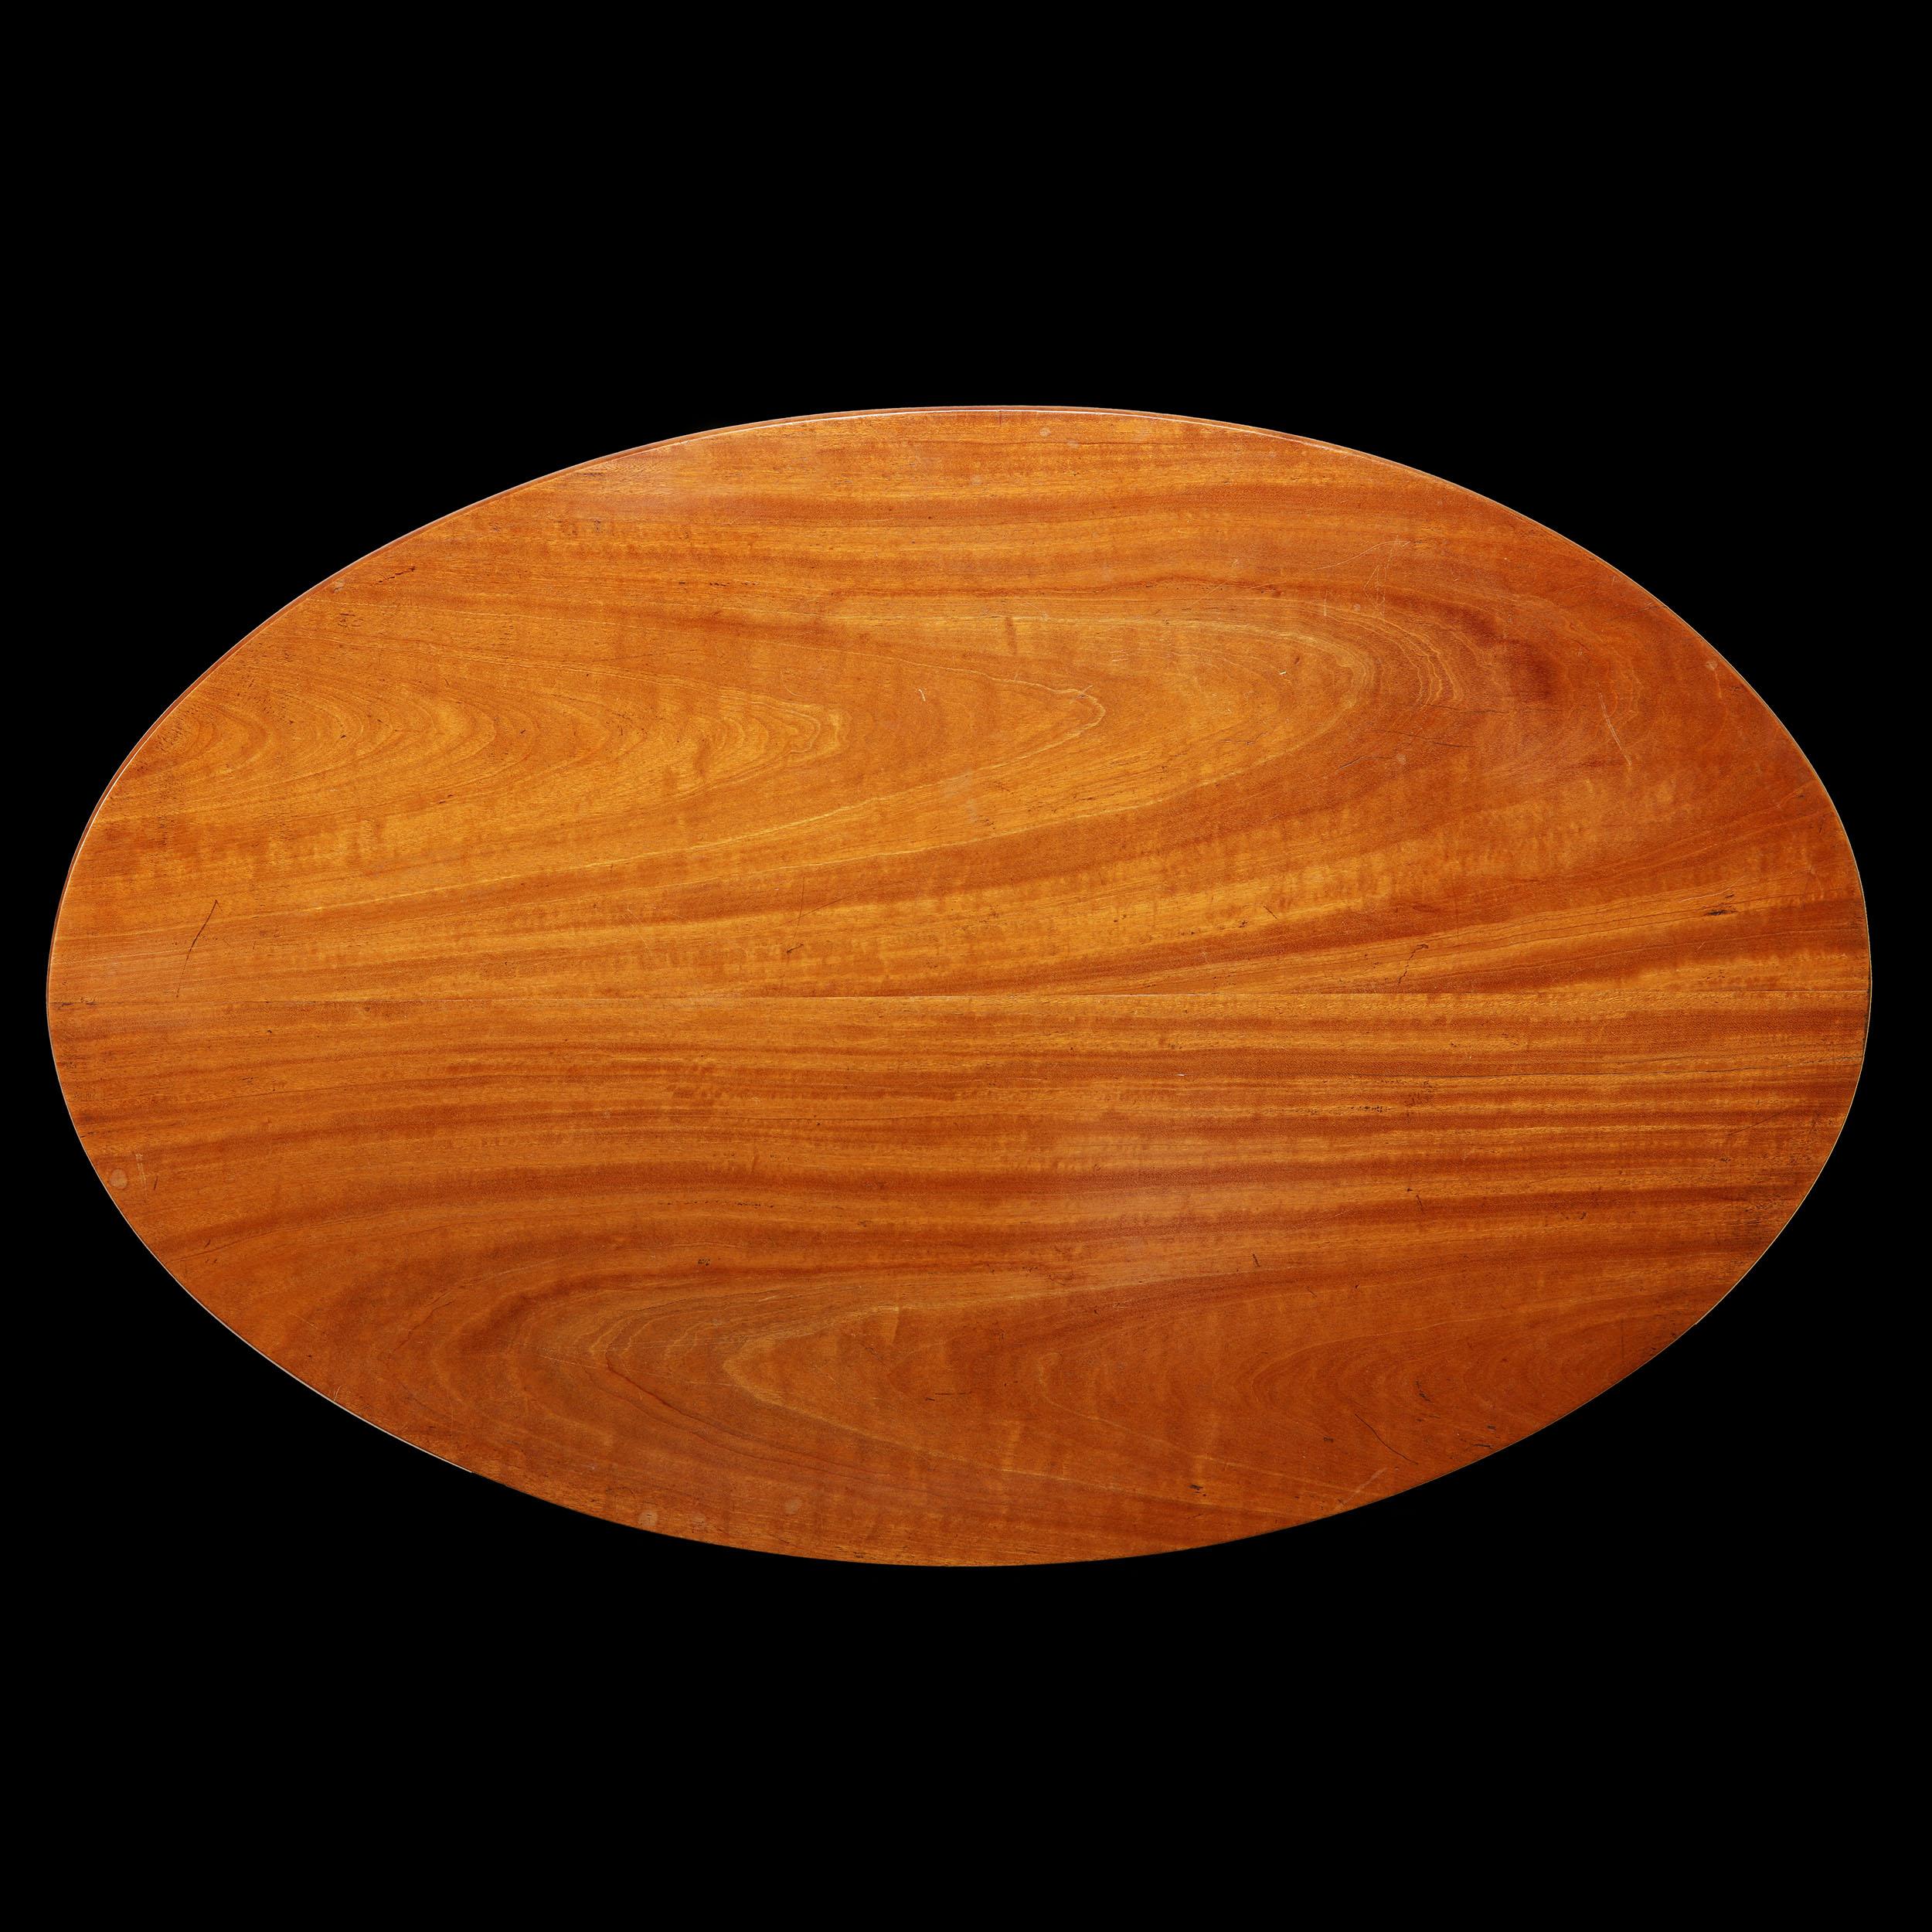 Ein feiner ovaler Tisch aus massivem singhalesischem Satinholz, mit abgeschrägter Kante und gedrechselter Säule, getragen von einem geschnitzten vierbeinigen Sockel.

Höhe     61.50cm  
Breite      61.00cm
Tiefe      35.00cm